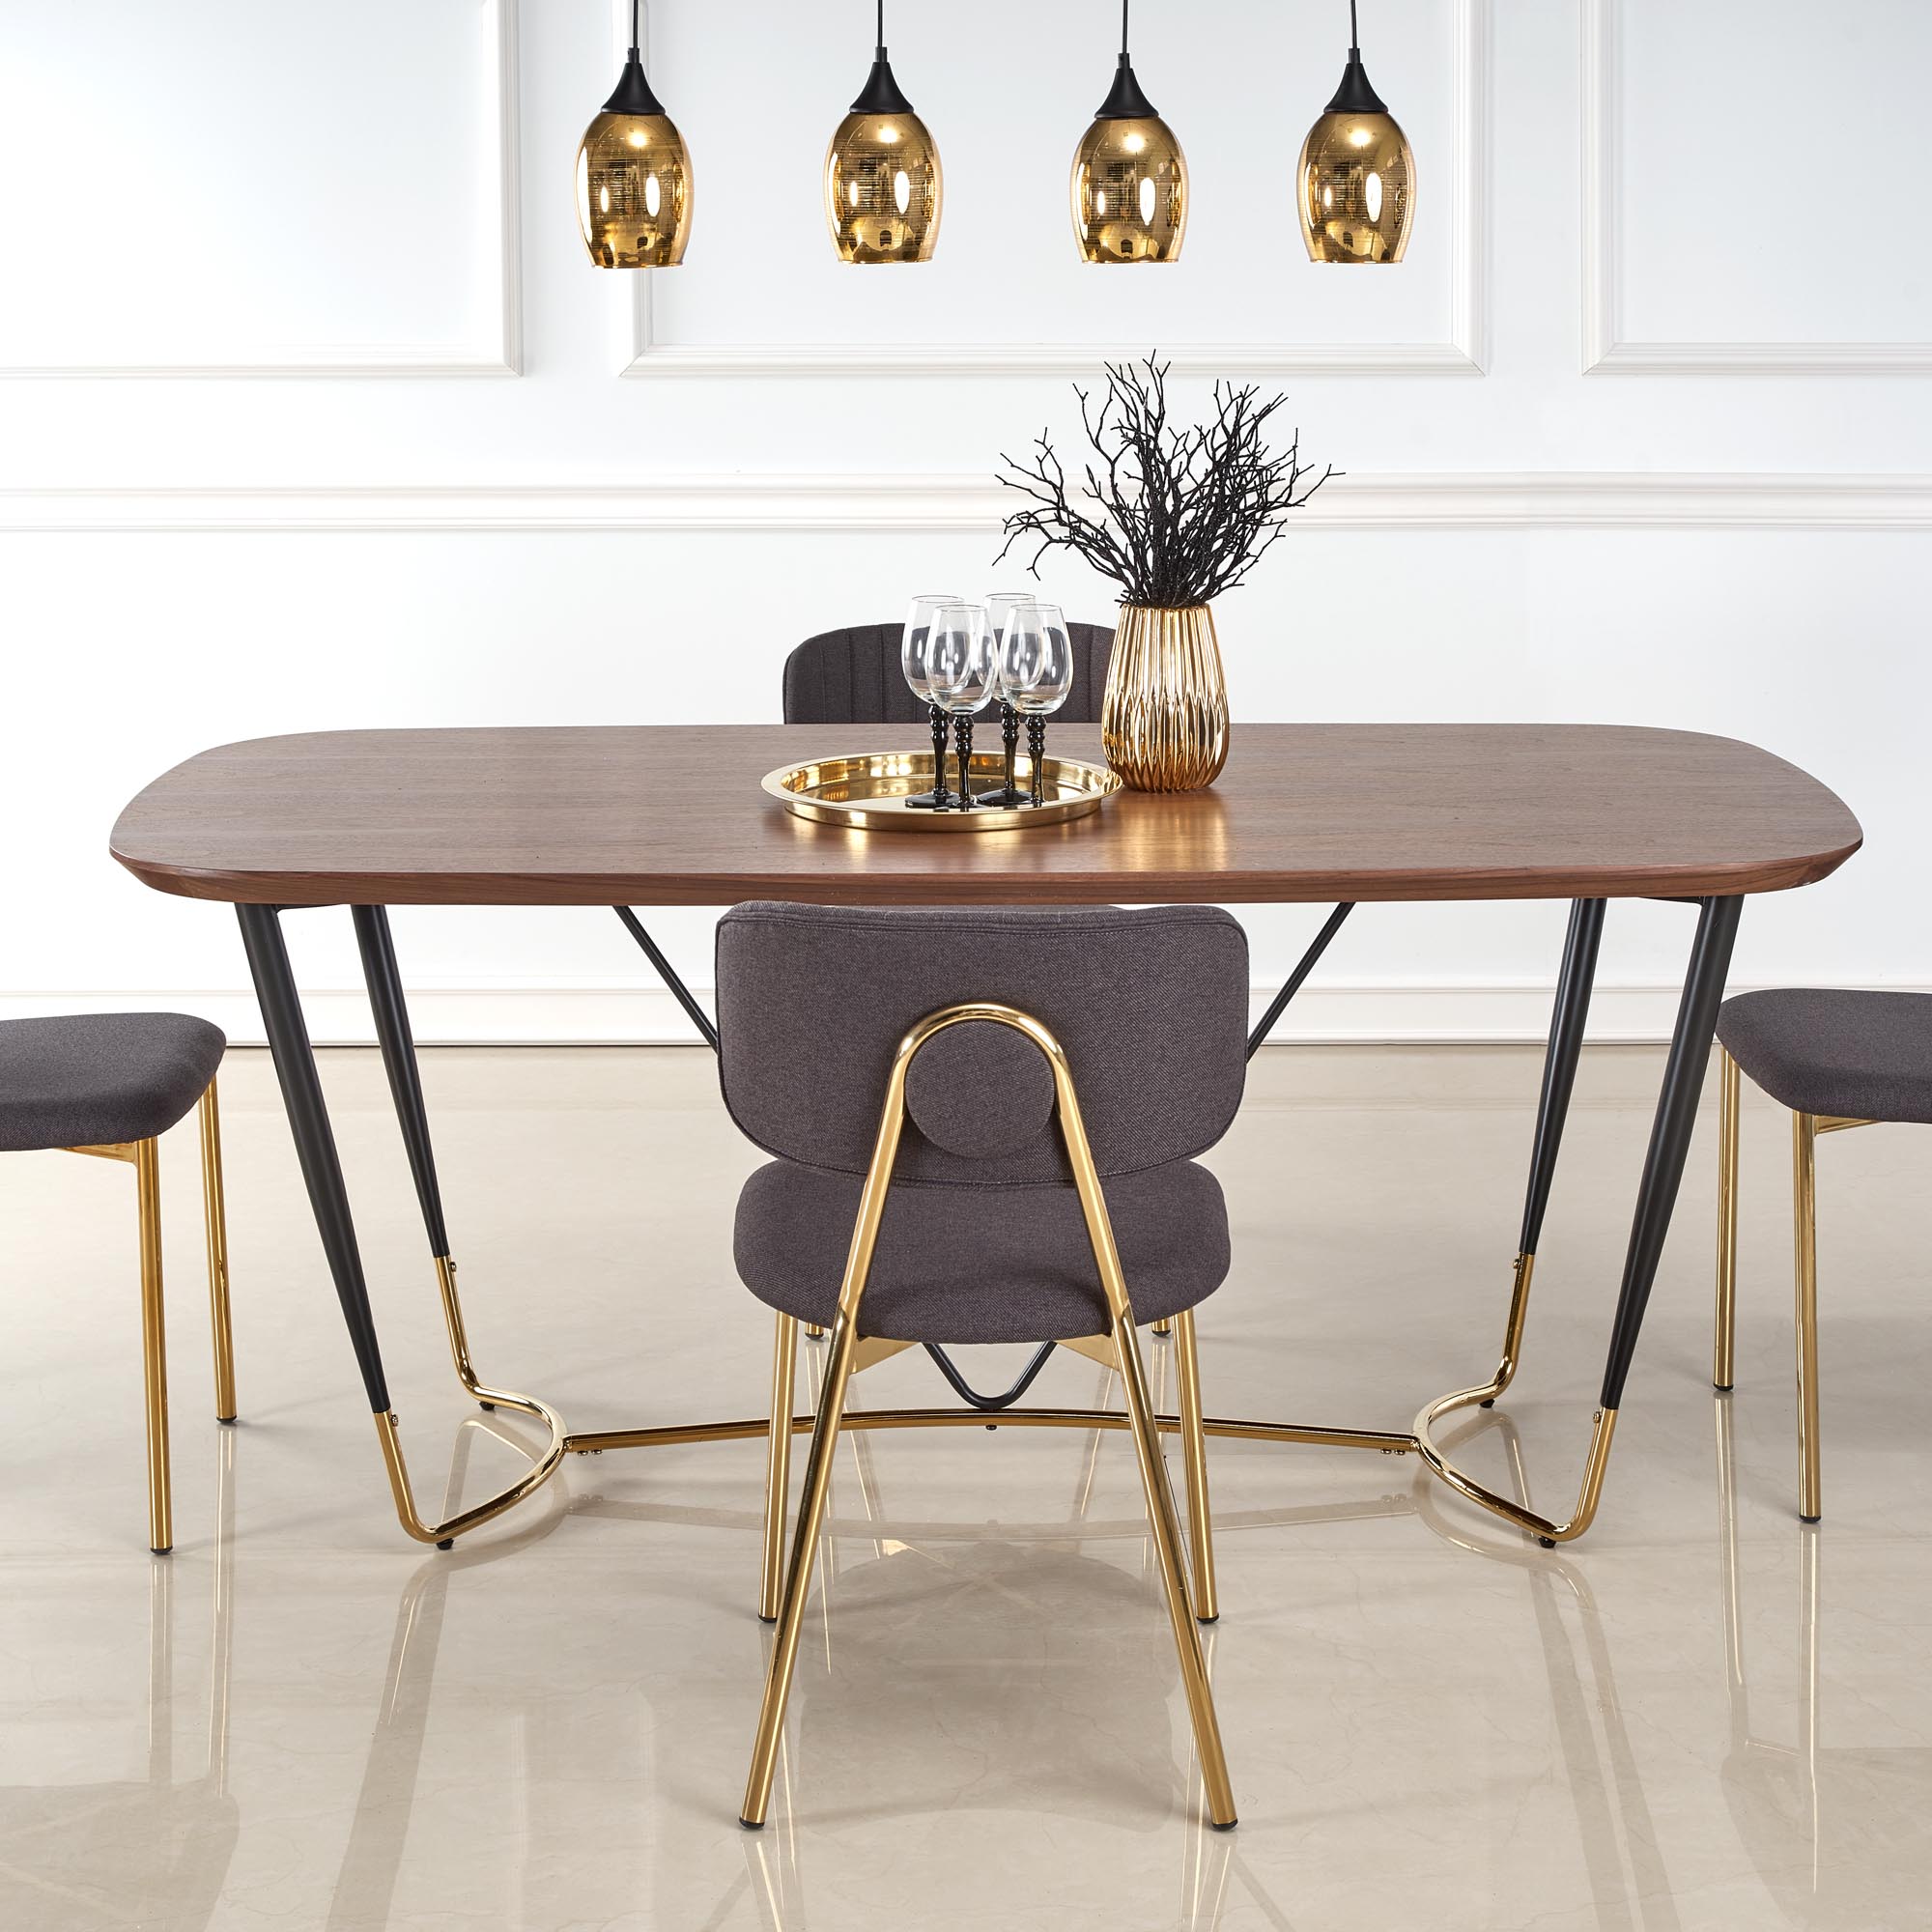 Manchester asztal - diófa / fekete / arany stůl manchester - ořech / Fekete / zlatý